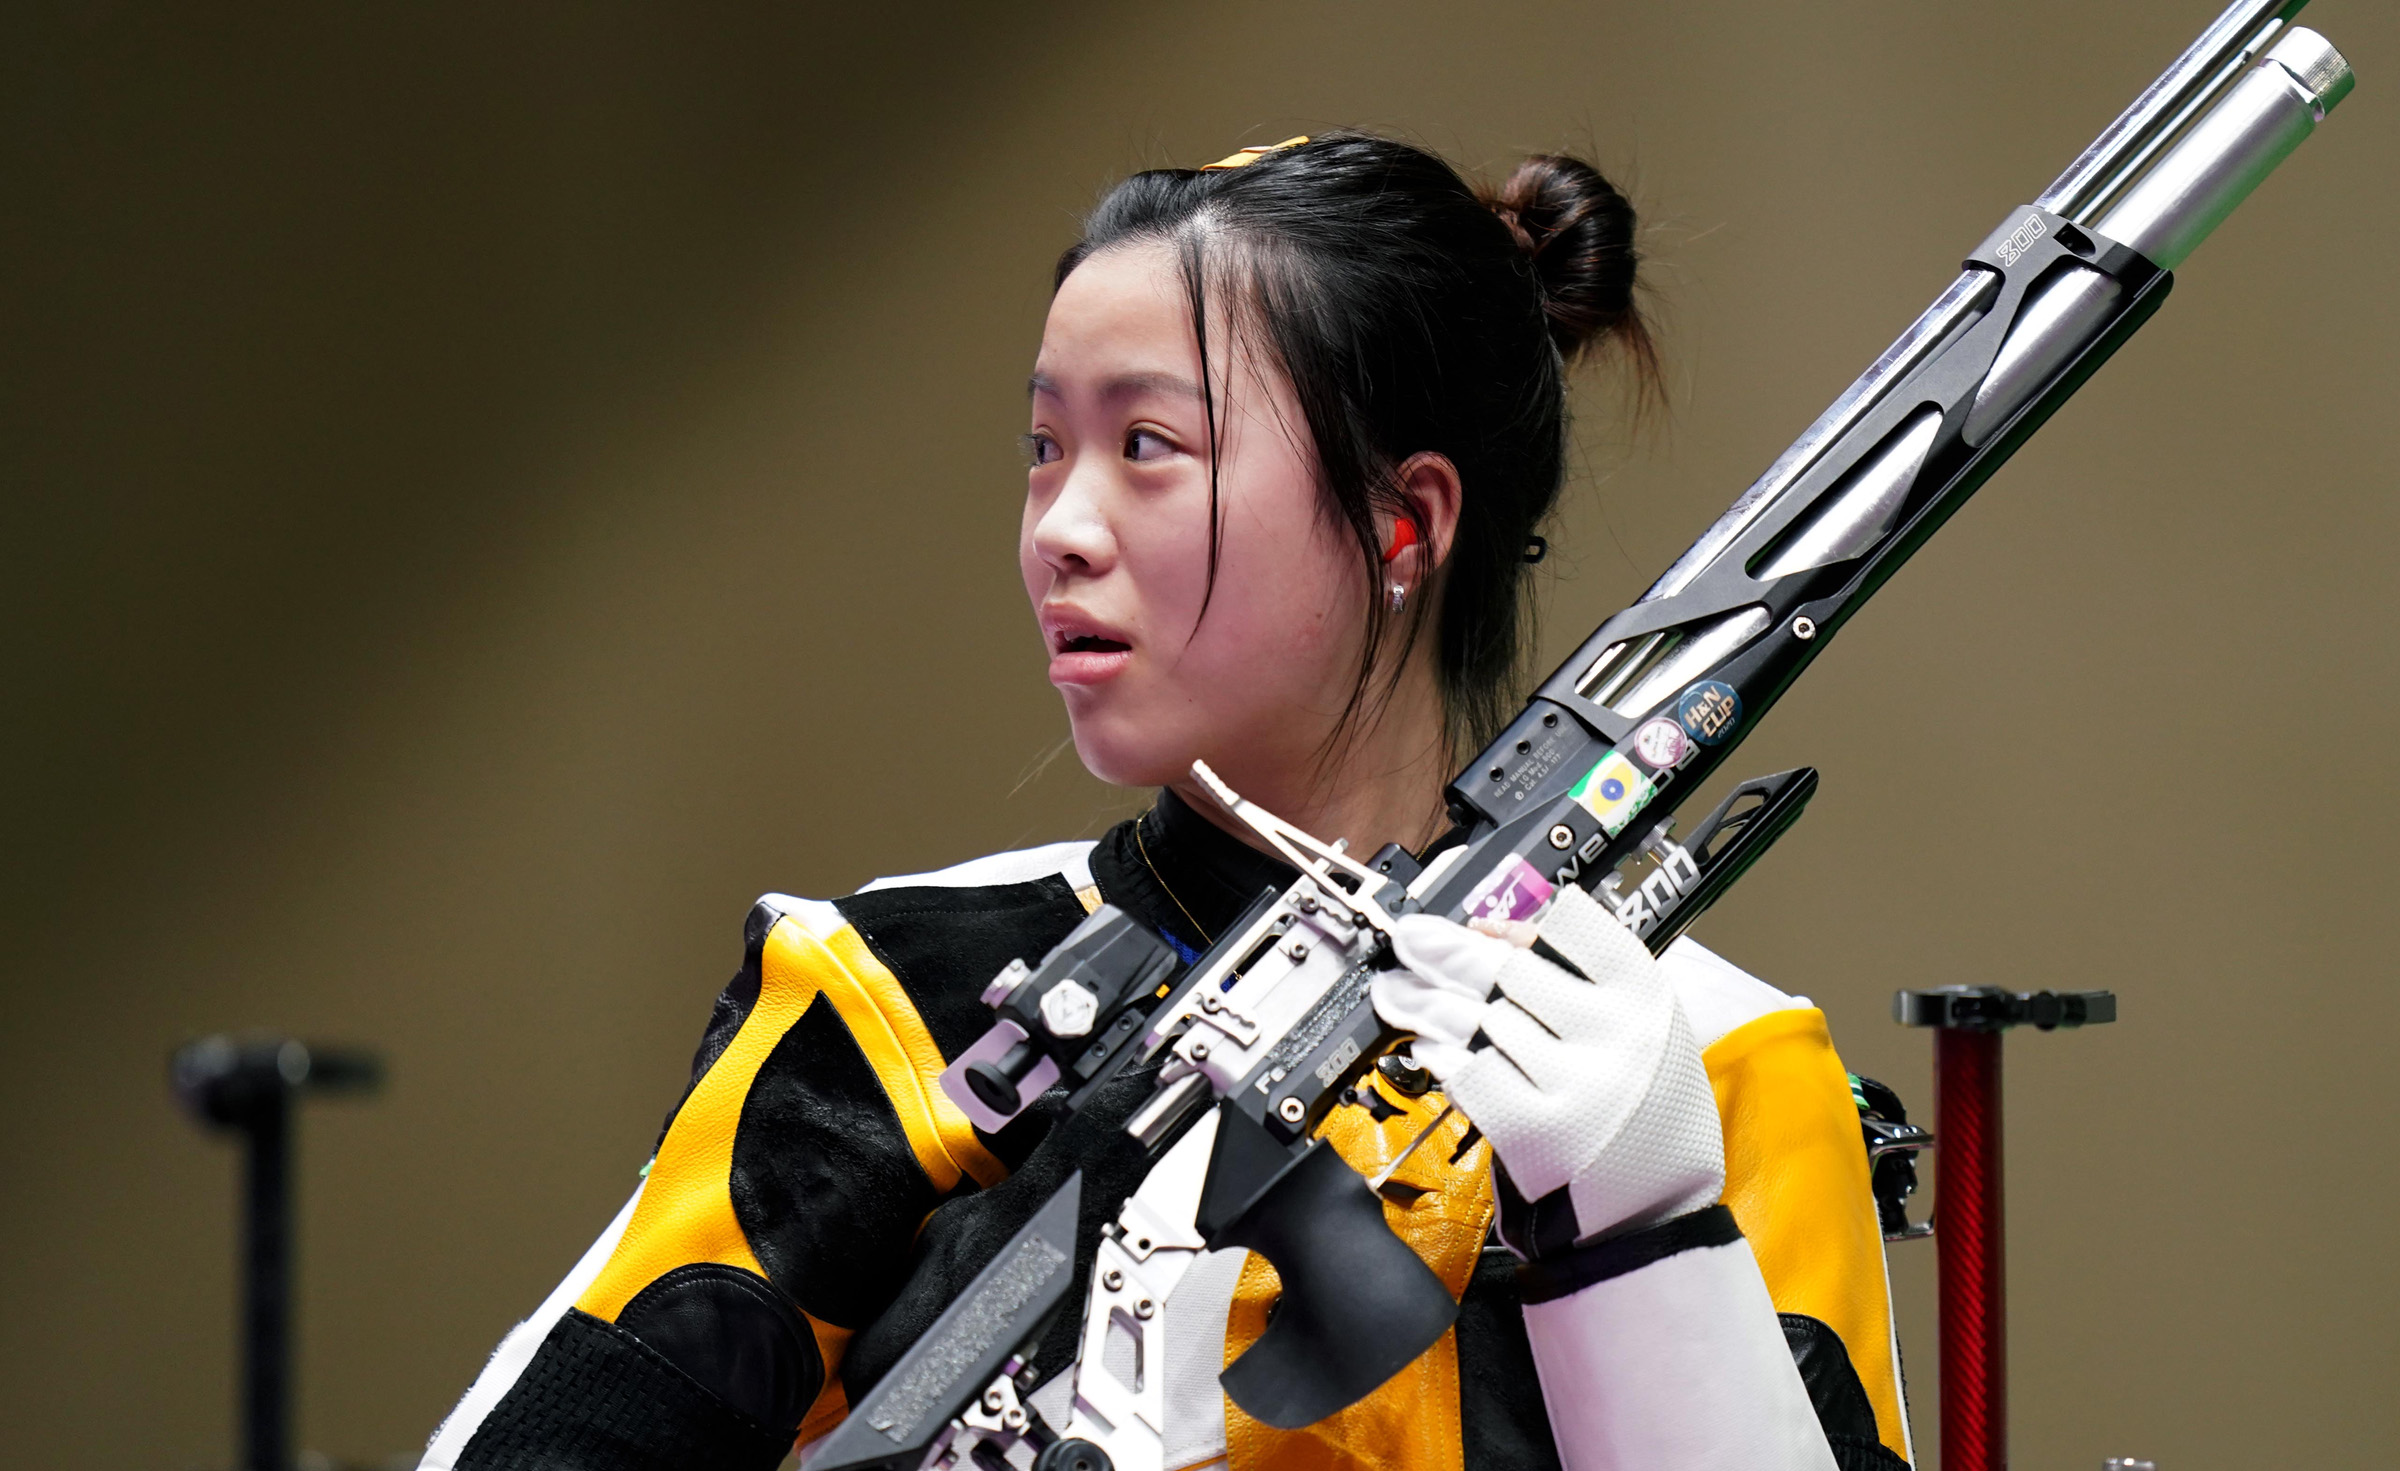 टोकियो ओलम्पिकः तीन स्वर्णसहित चीन शीर्ष स्थानमा